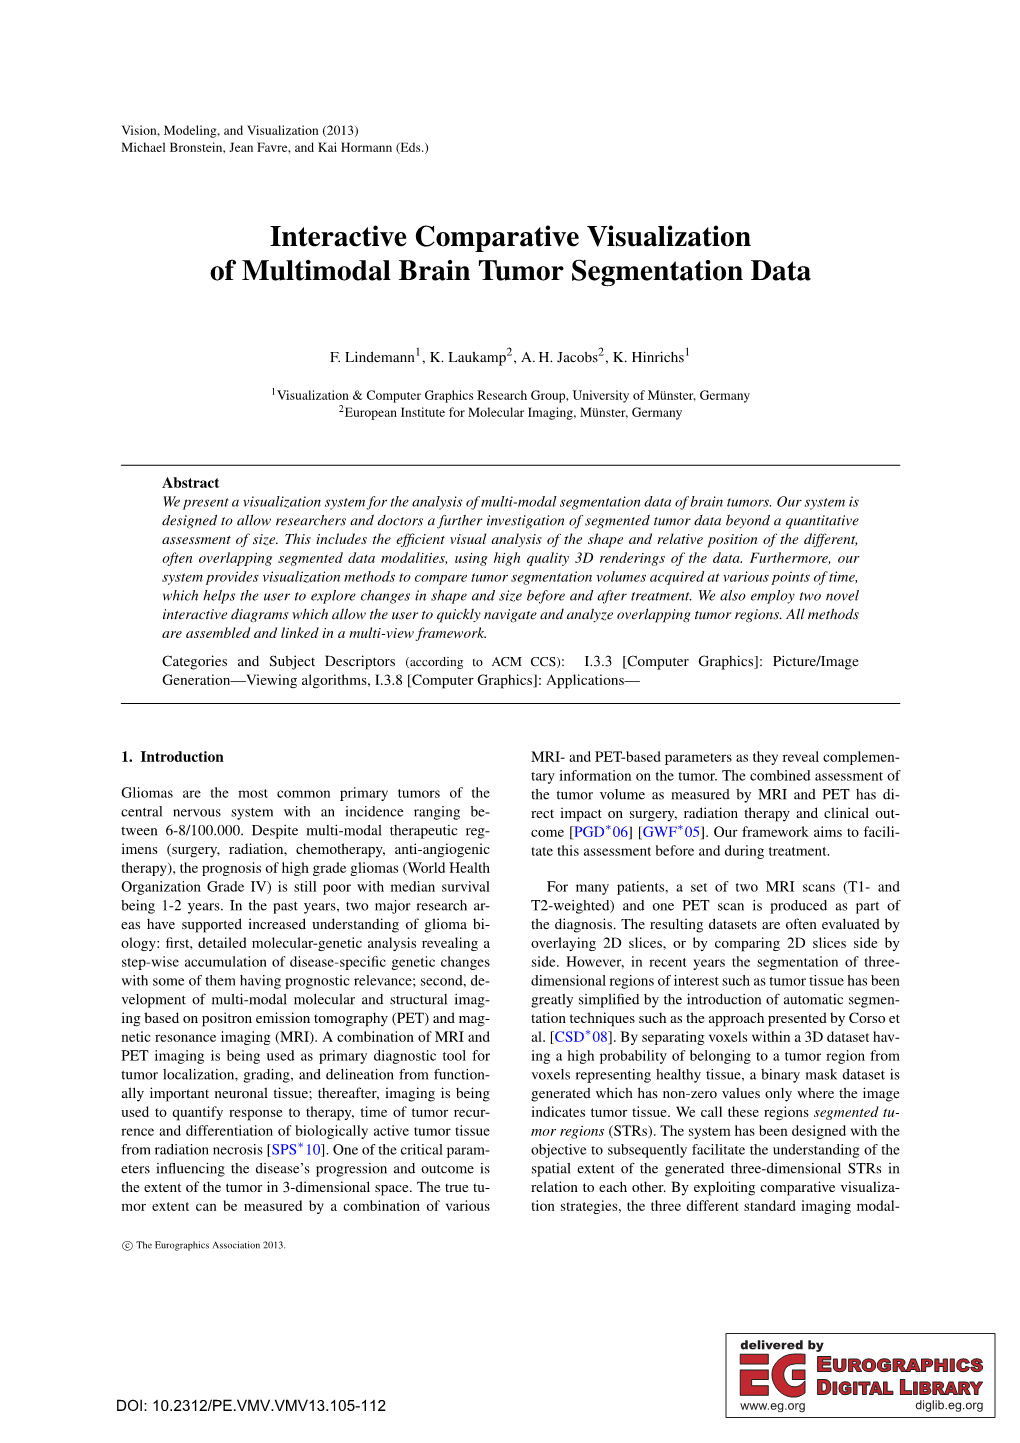 Interactive Comparative Visualization of Multimodal Brain Tumor Segmentation Data